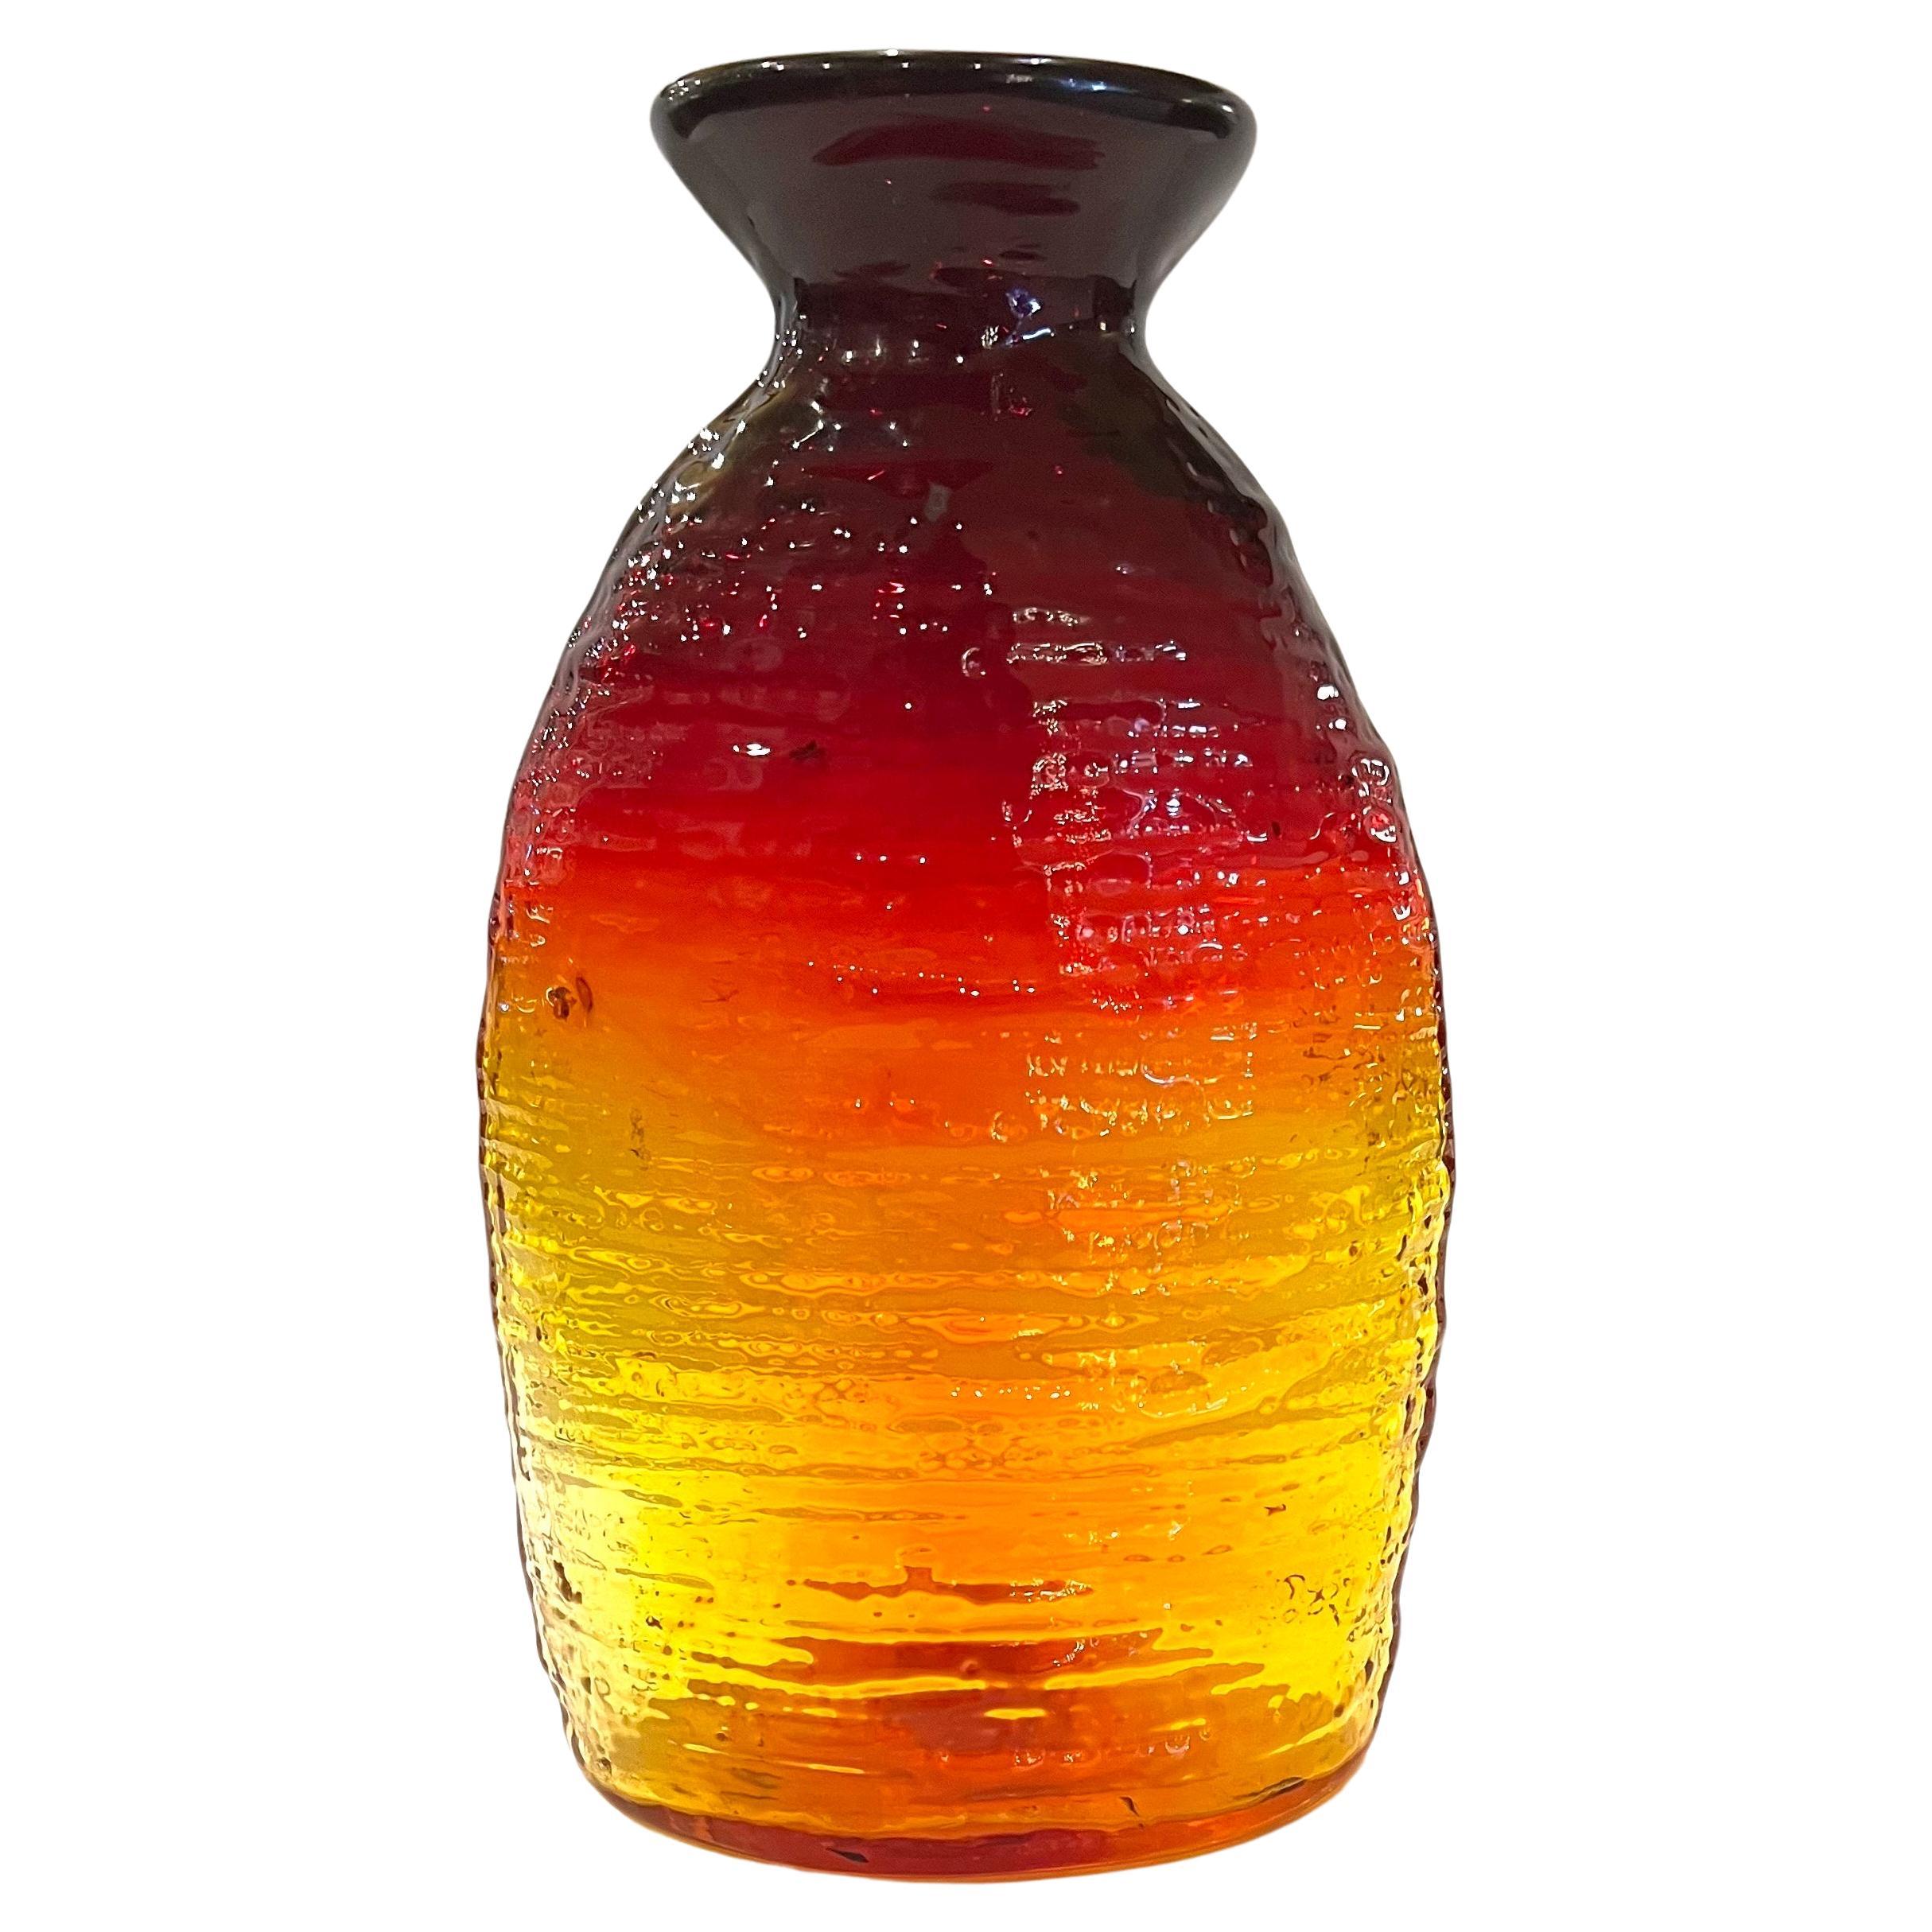  Vase de collection en verre ambréna 213SL Strata signé et daté de 2005 par Blenko